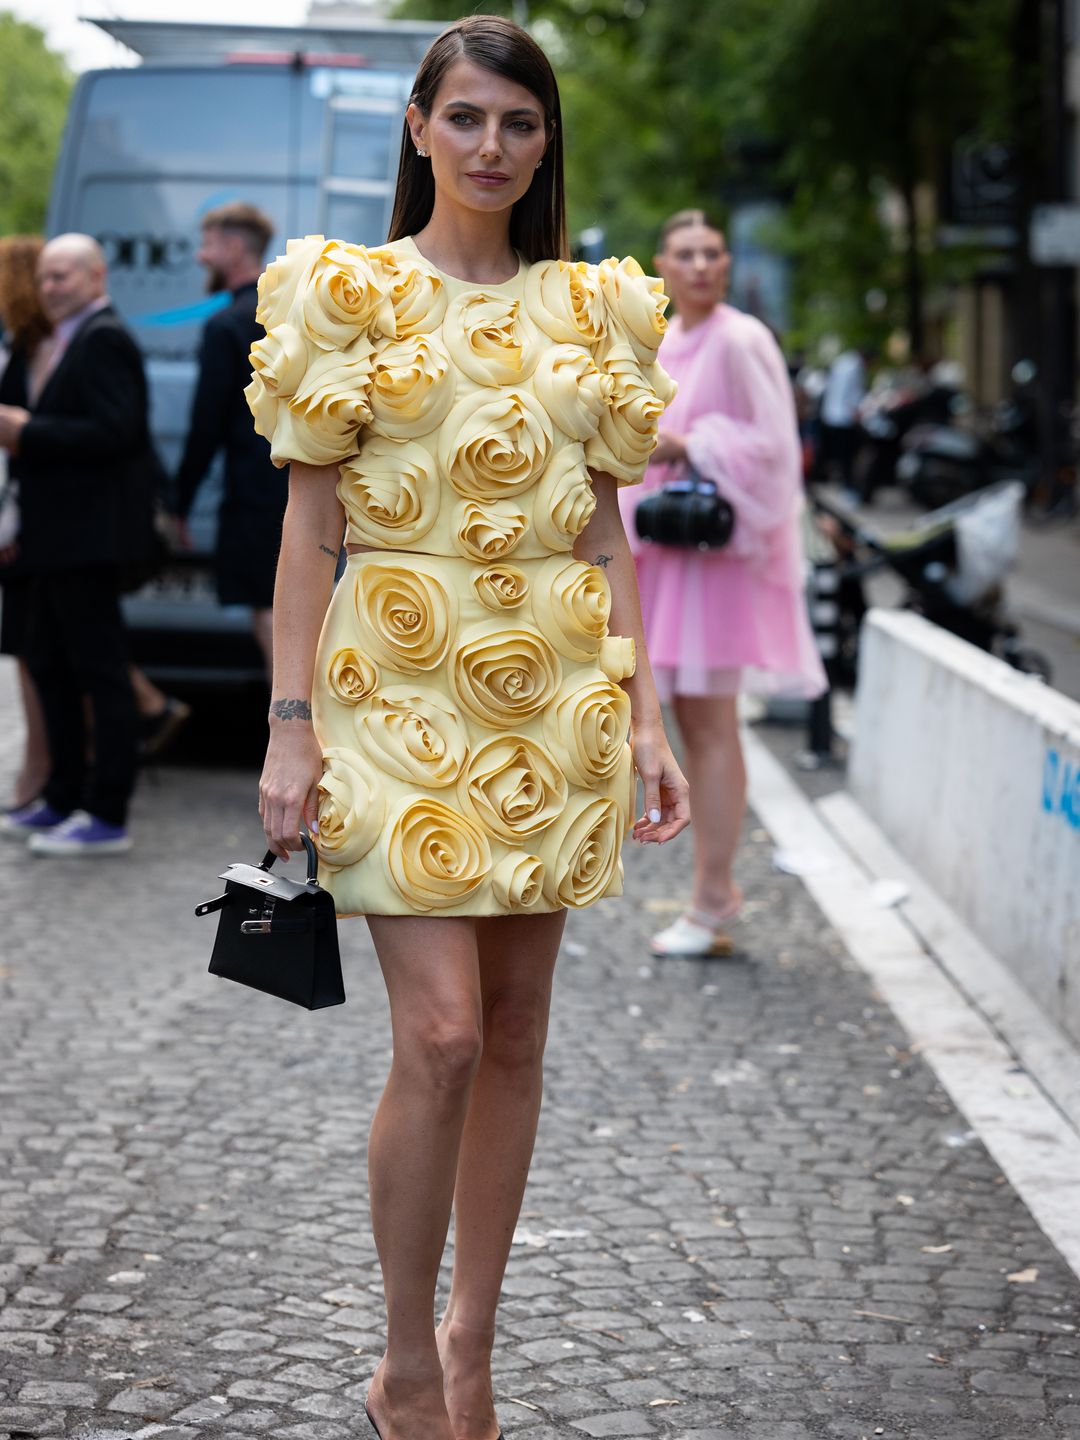 Kelly Piquet wearing a yellow 3D rosette-adorned mini skirt 